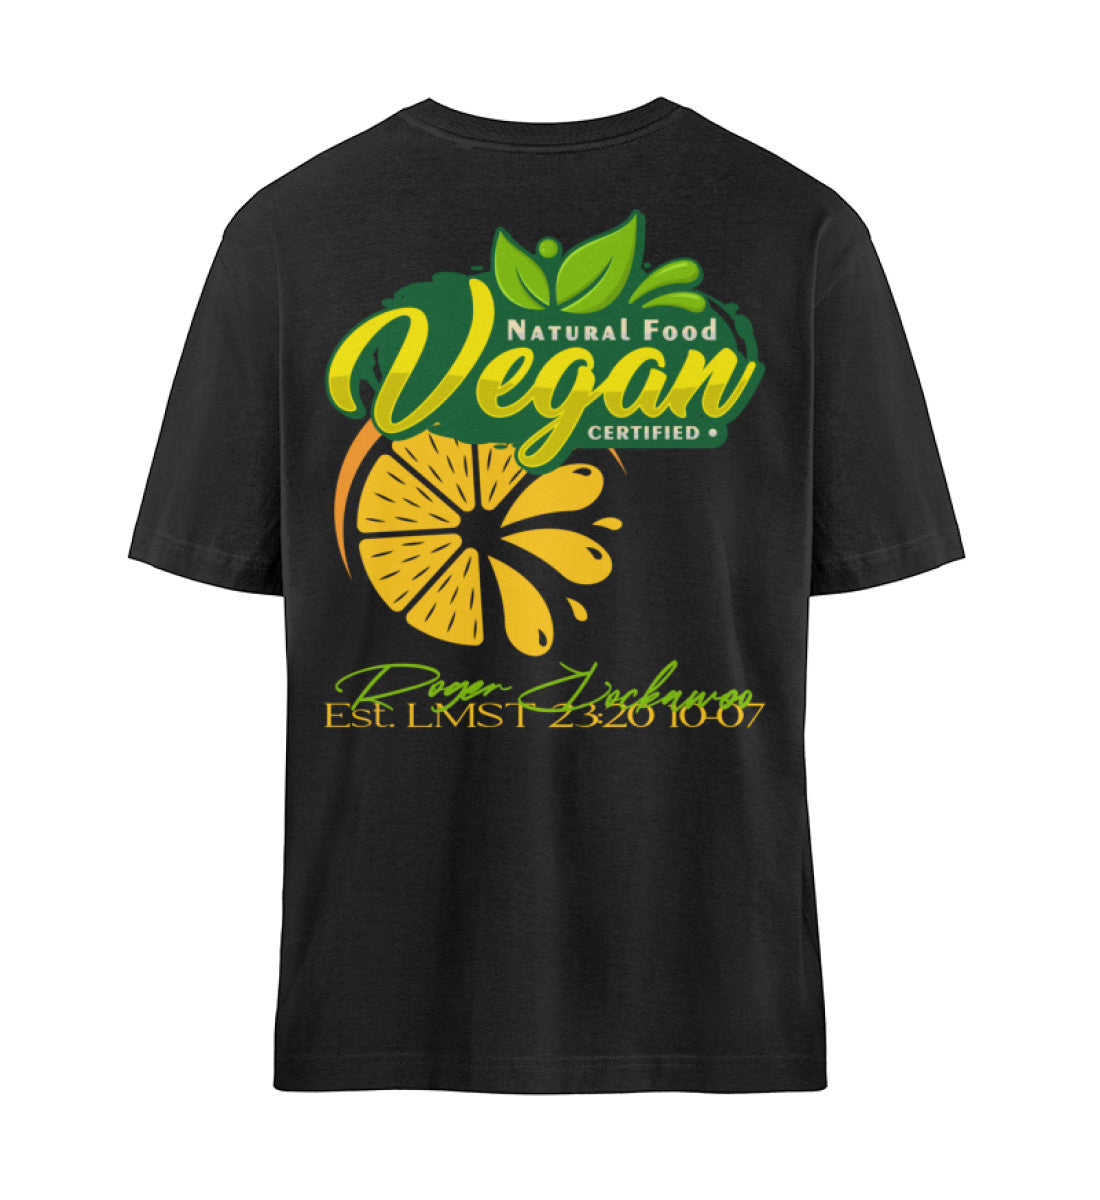 Schwarzes T-Shirt Unisex Relaxed Fit für Frauen und Männer bedruckt mit dem Design der Roger Rockawoo Kollektion vegan as f